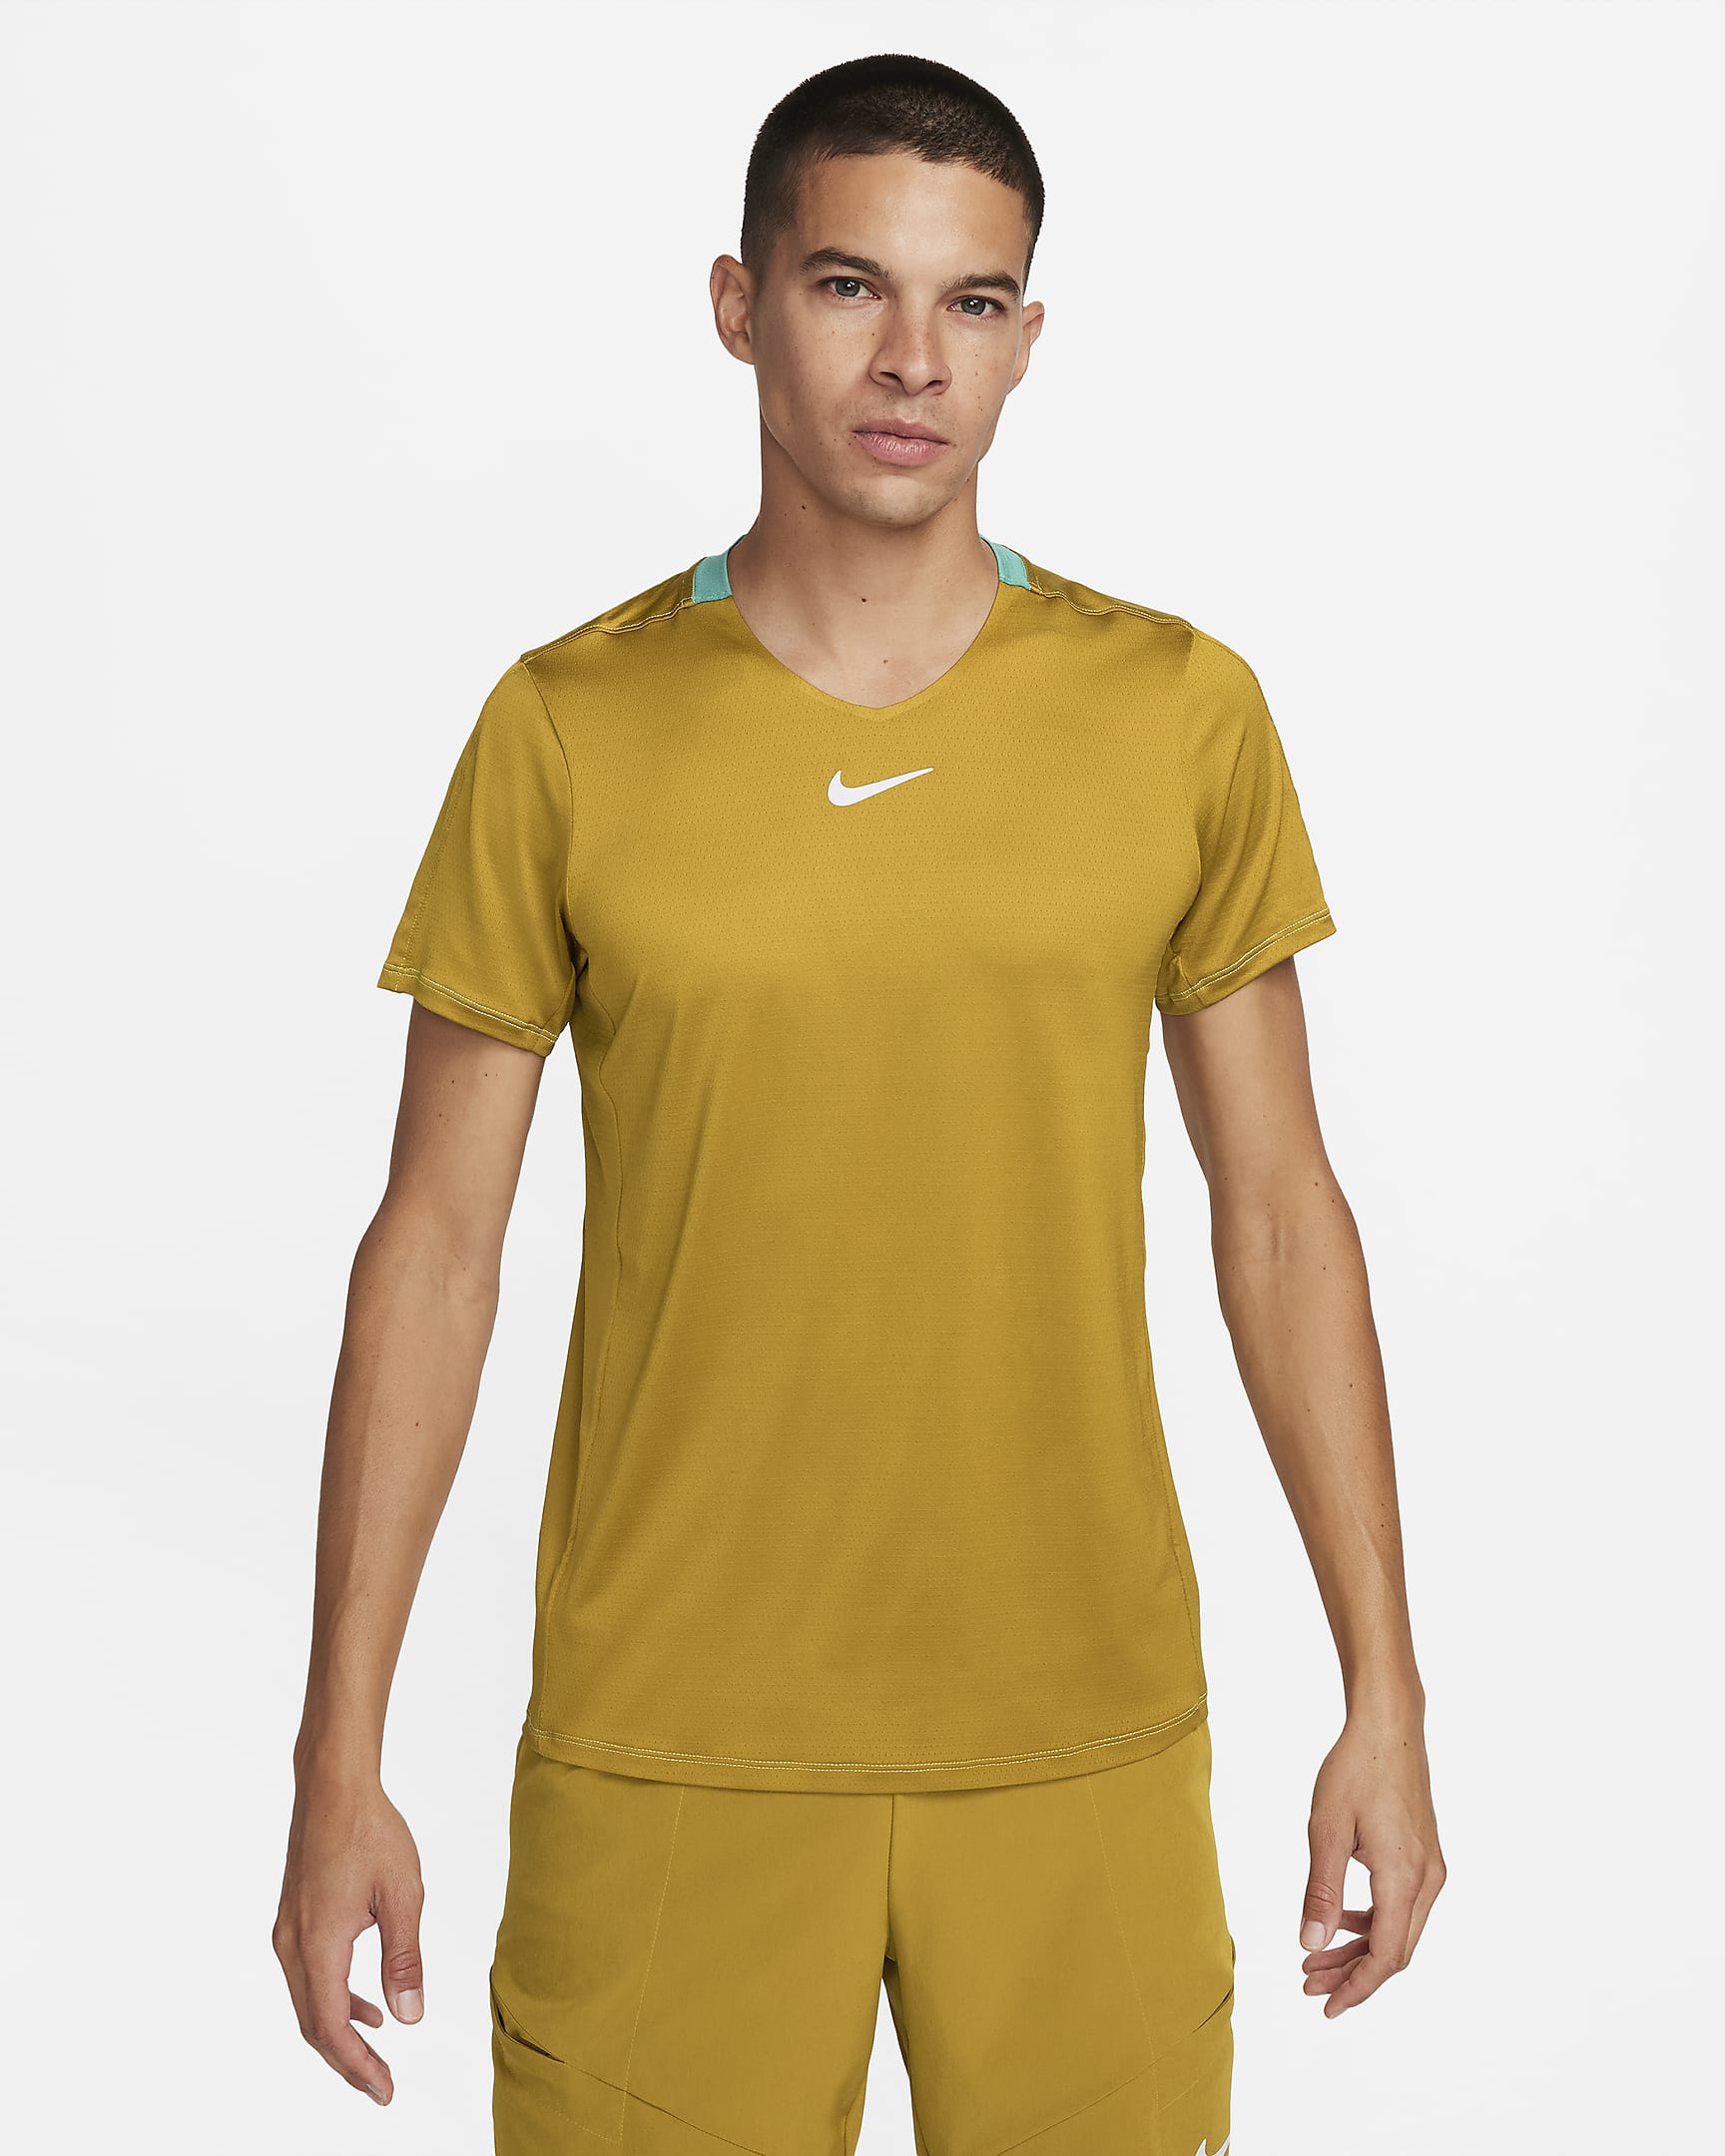 NikeCourt Dri-FIT Advantage Men's Tennis Top. Nike CH